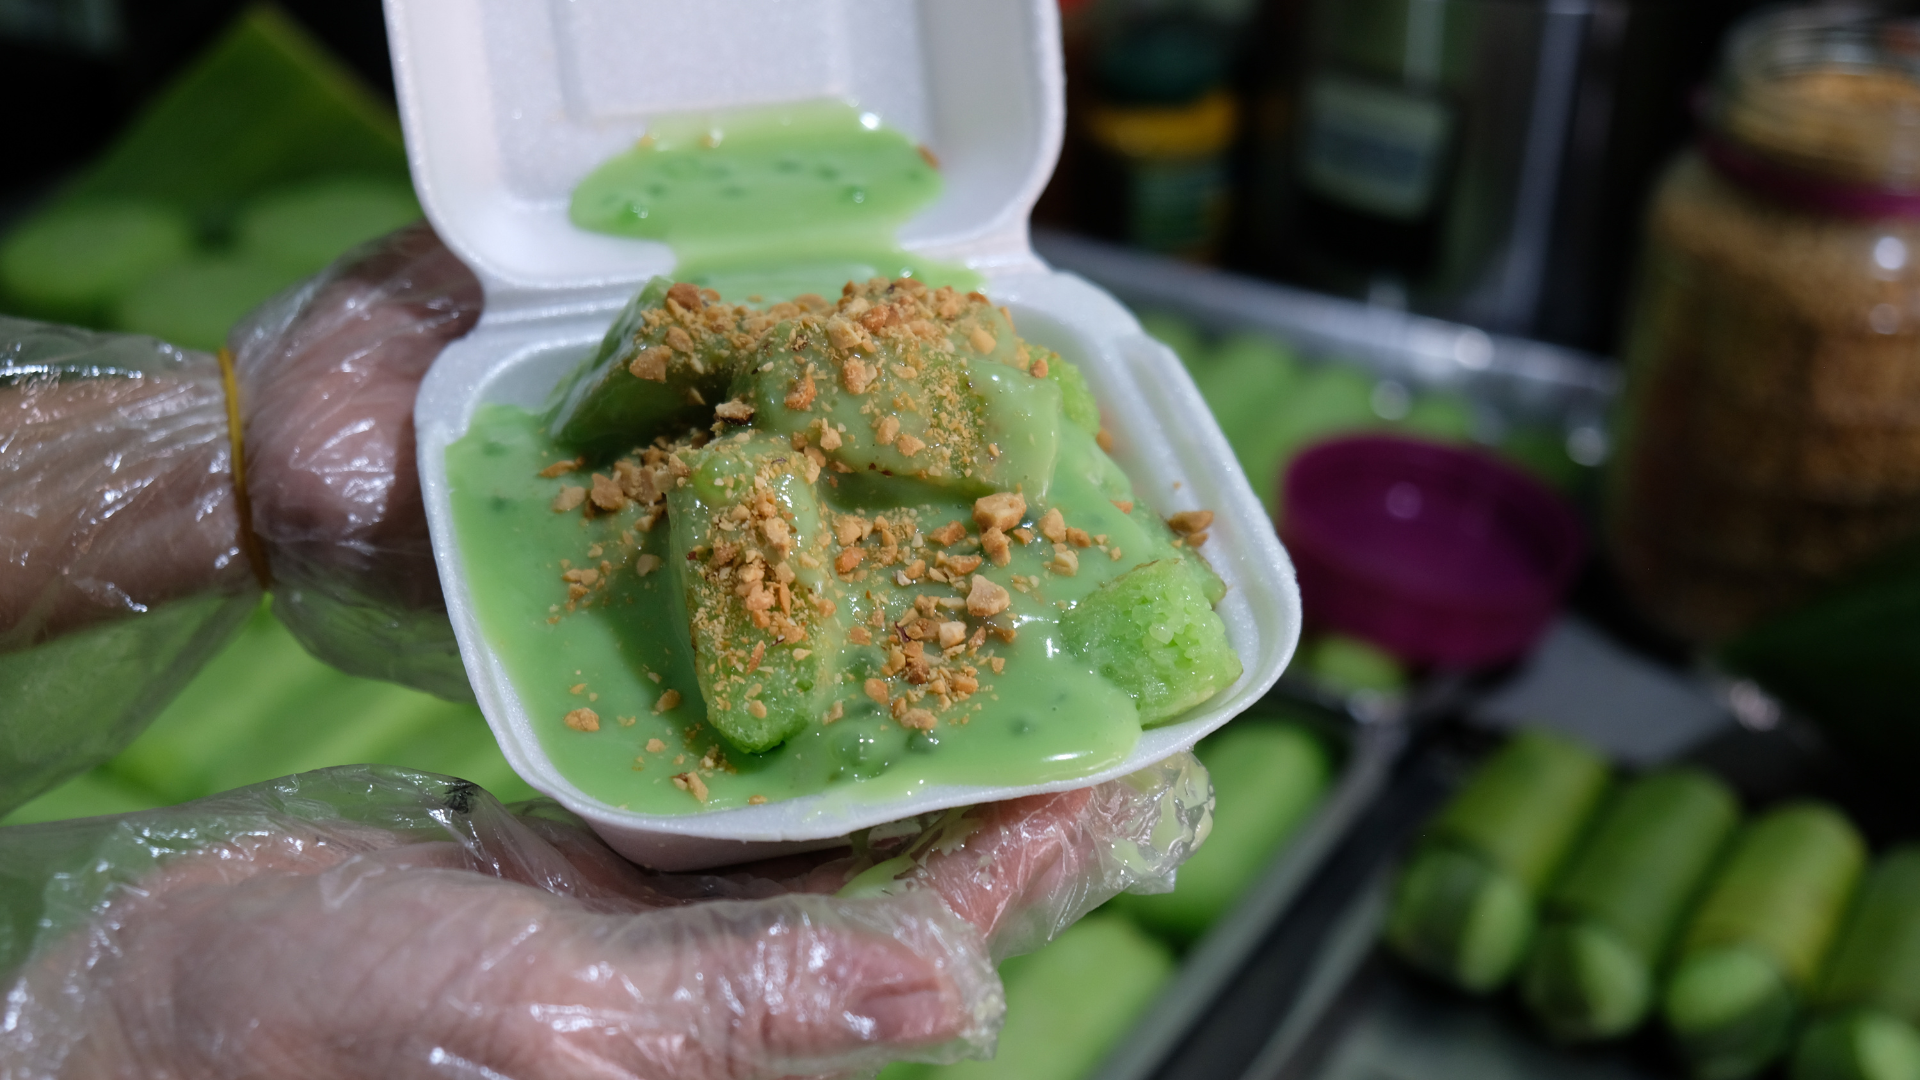 Bánh nếp nướng ăn kèm cốt dừa lá dứa xanh nõn siêu ngon tại Chợ Lớn- Ảnh 4.